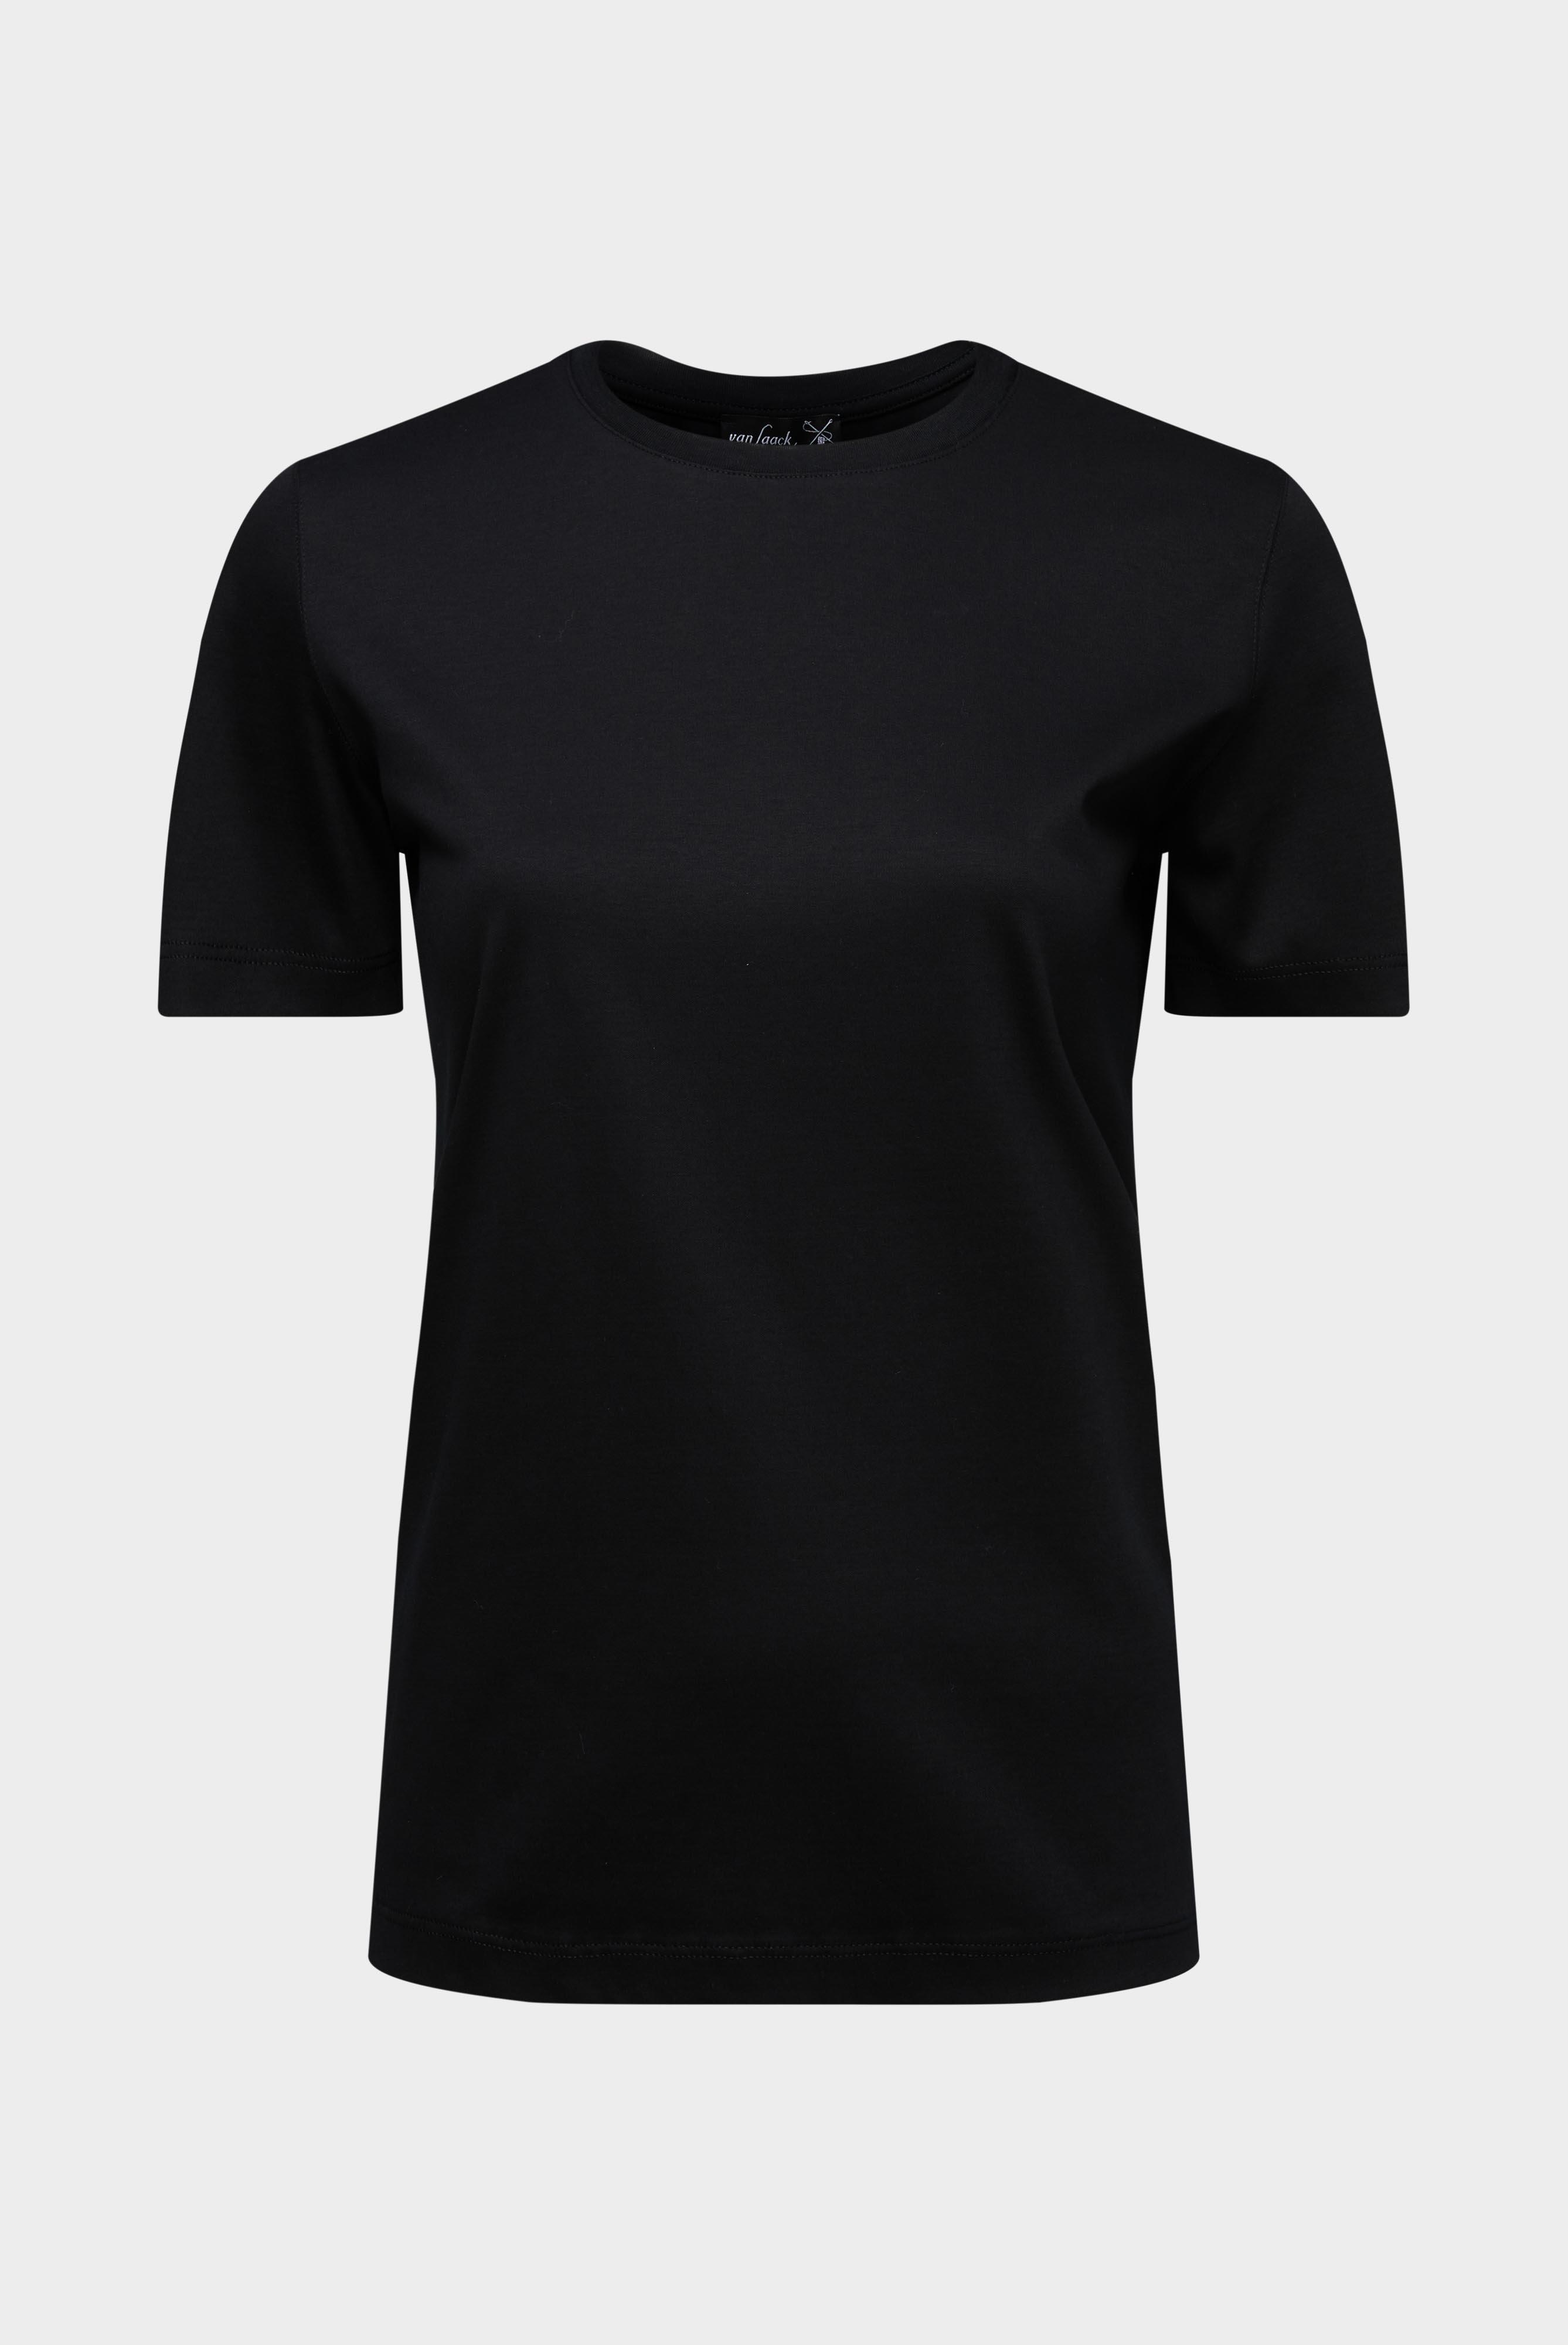 Tops & T-Shirts+Jersey T-Shirt+05.6384.18.180031.099.46